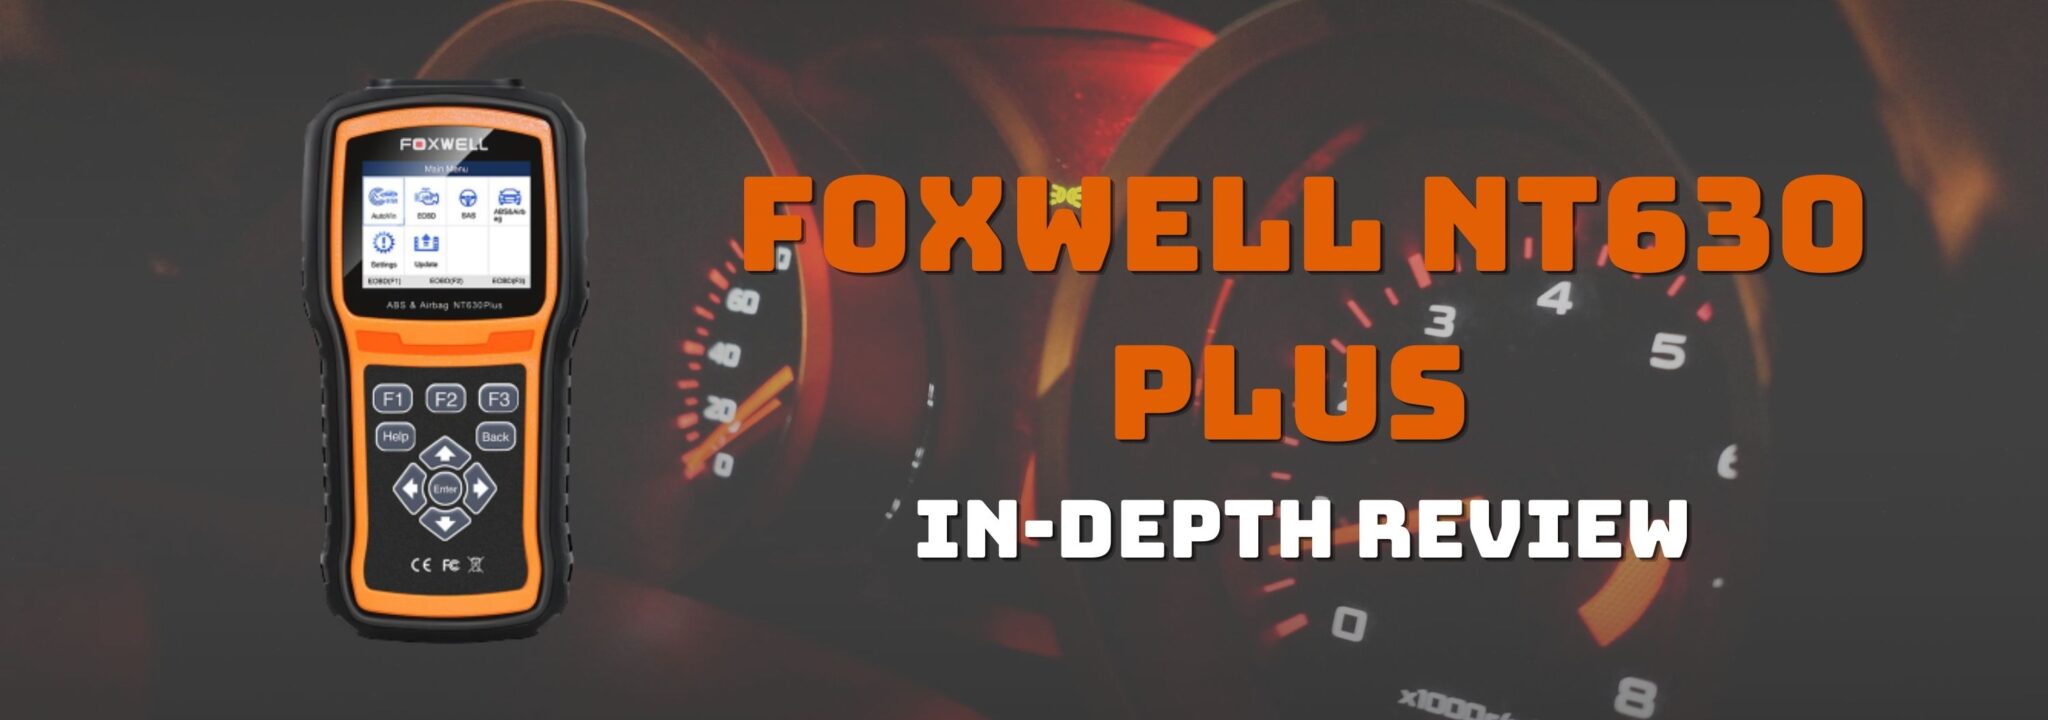 foxwell nt630 plus